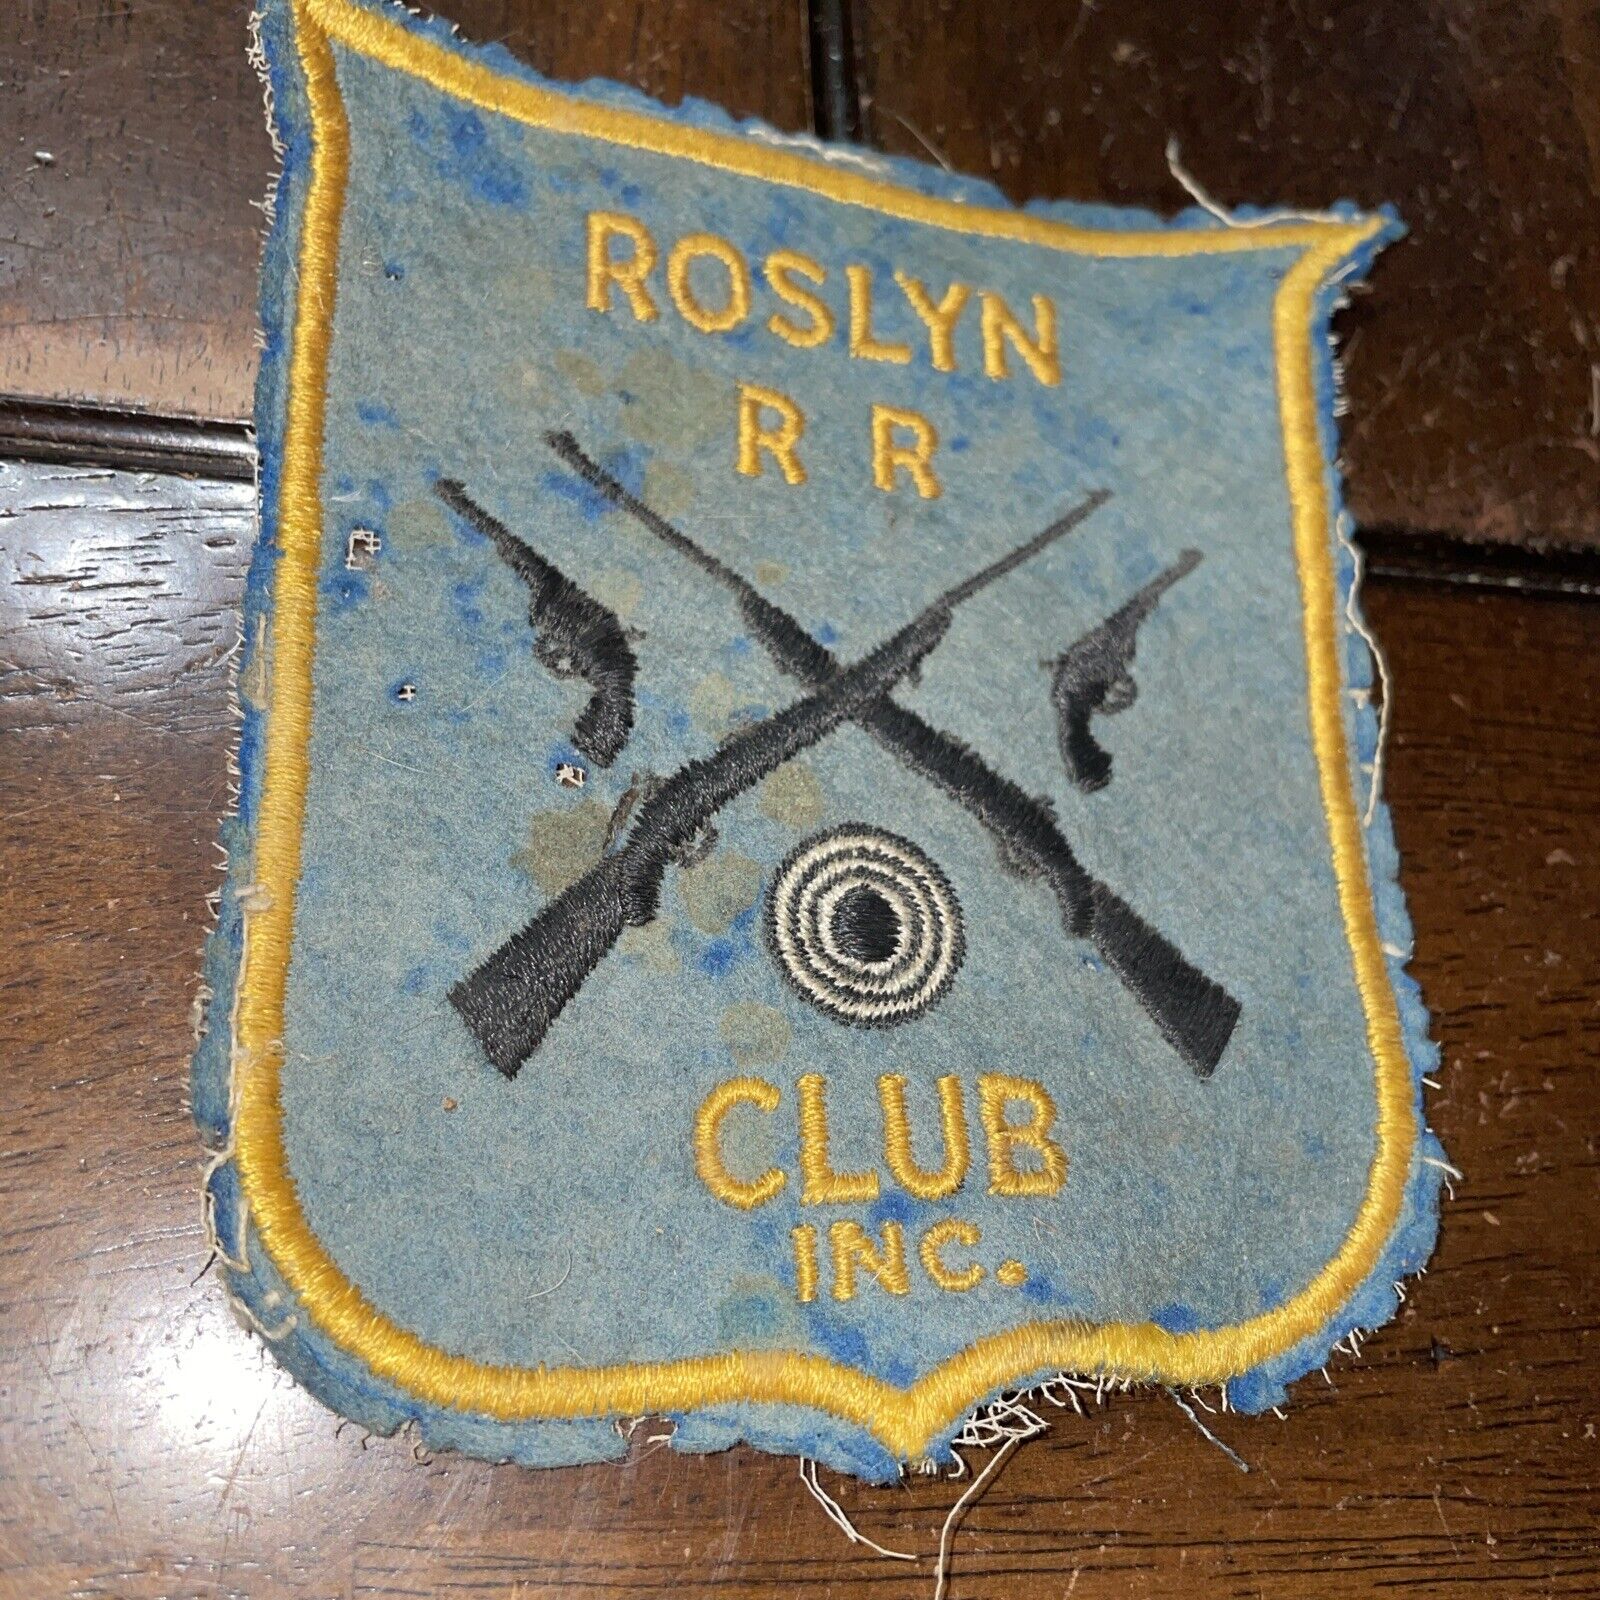 Rare ROSLYN R R CLUB INC. Felt Patch